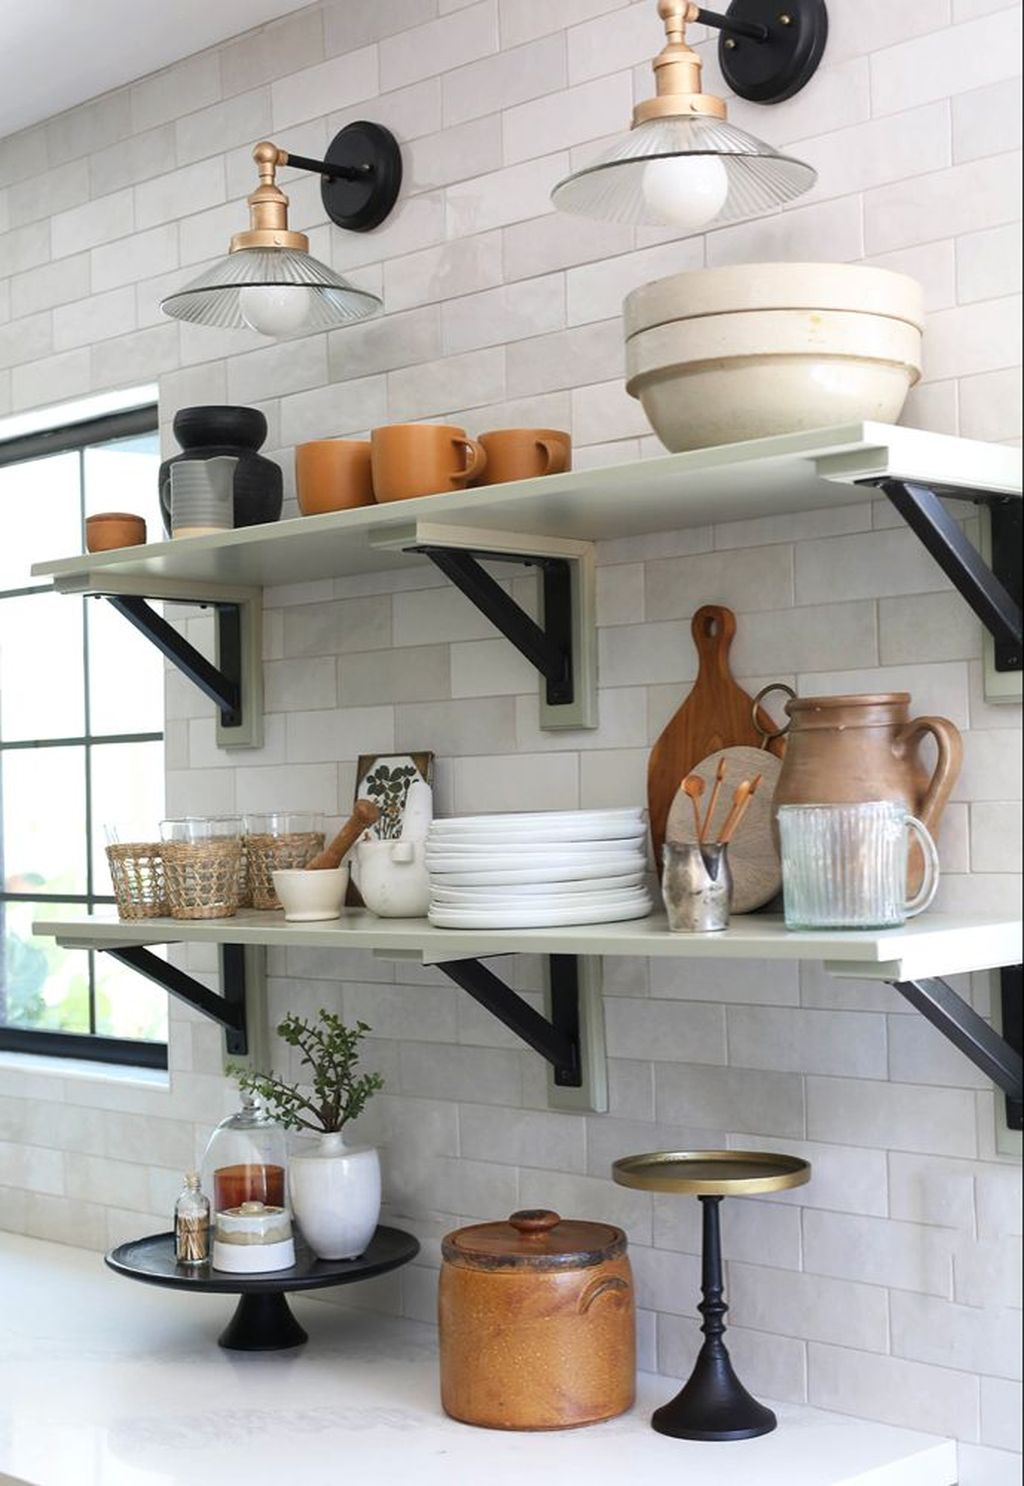 Wonderful Industrial Kitchen Shelf Design Ideas To Organize Your Kitchen14